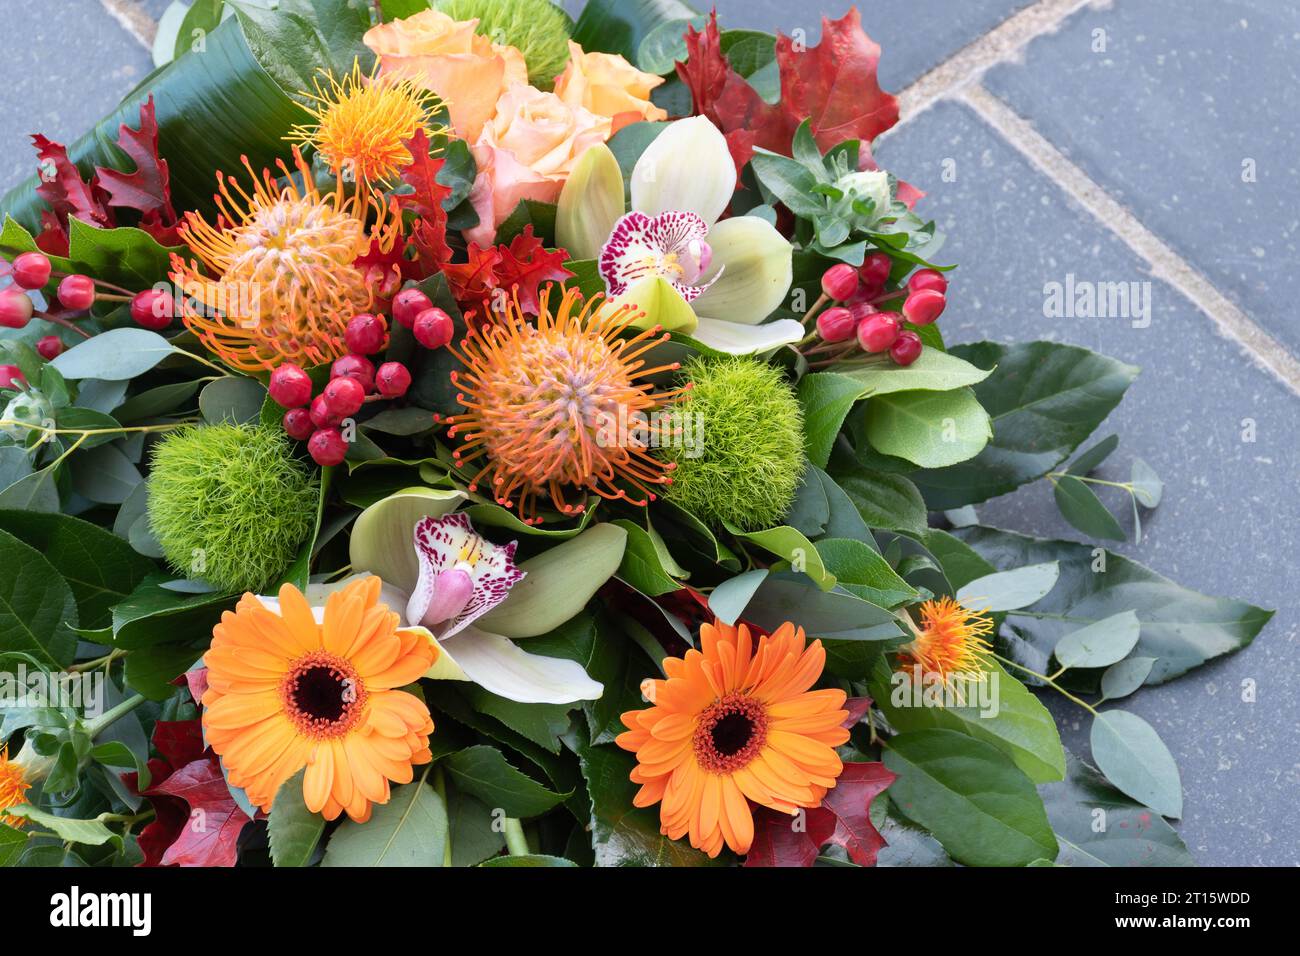 Flower arrangement with autumn colors. Stock Photo